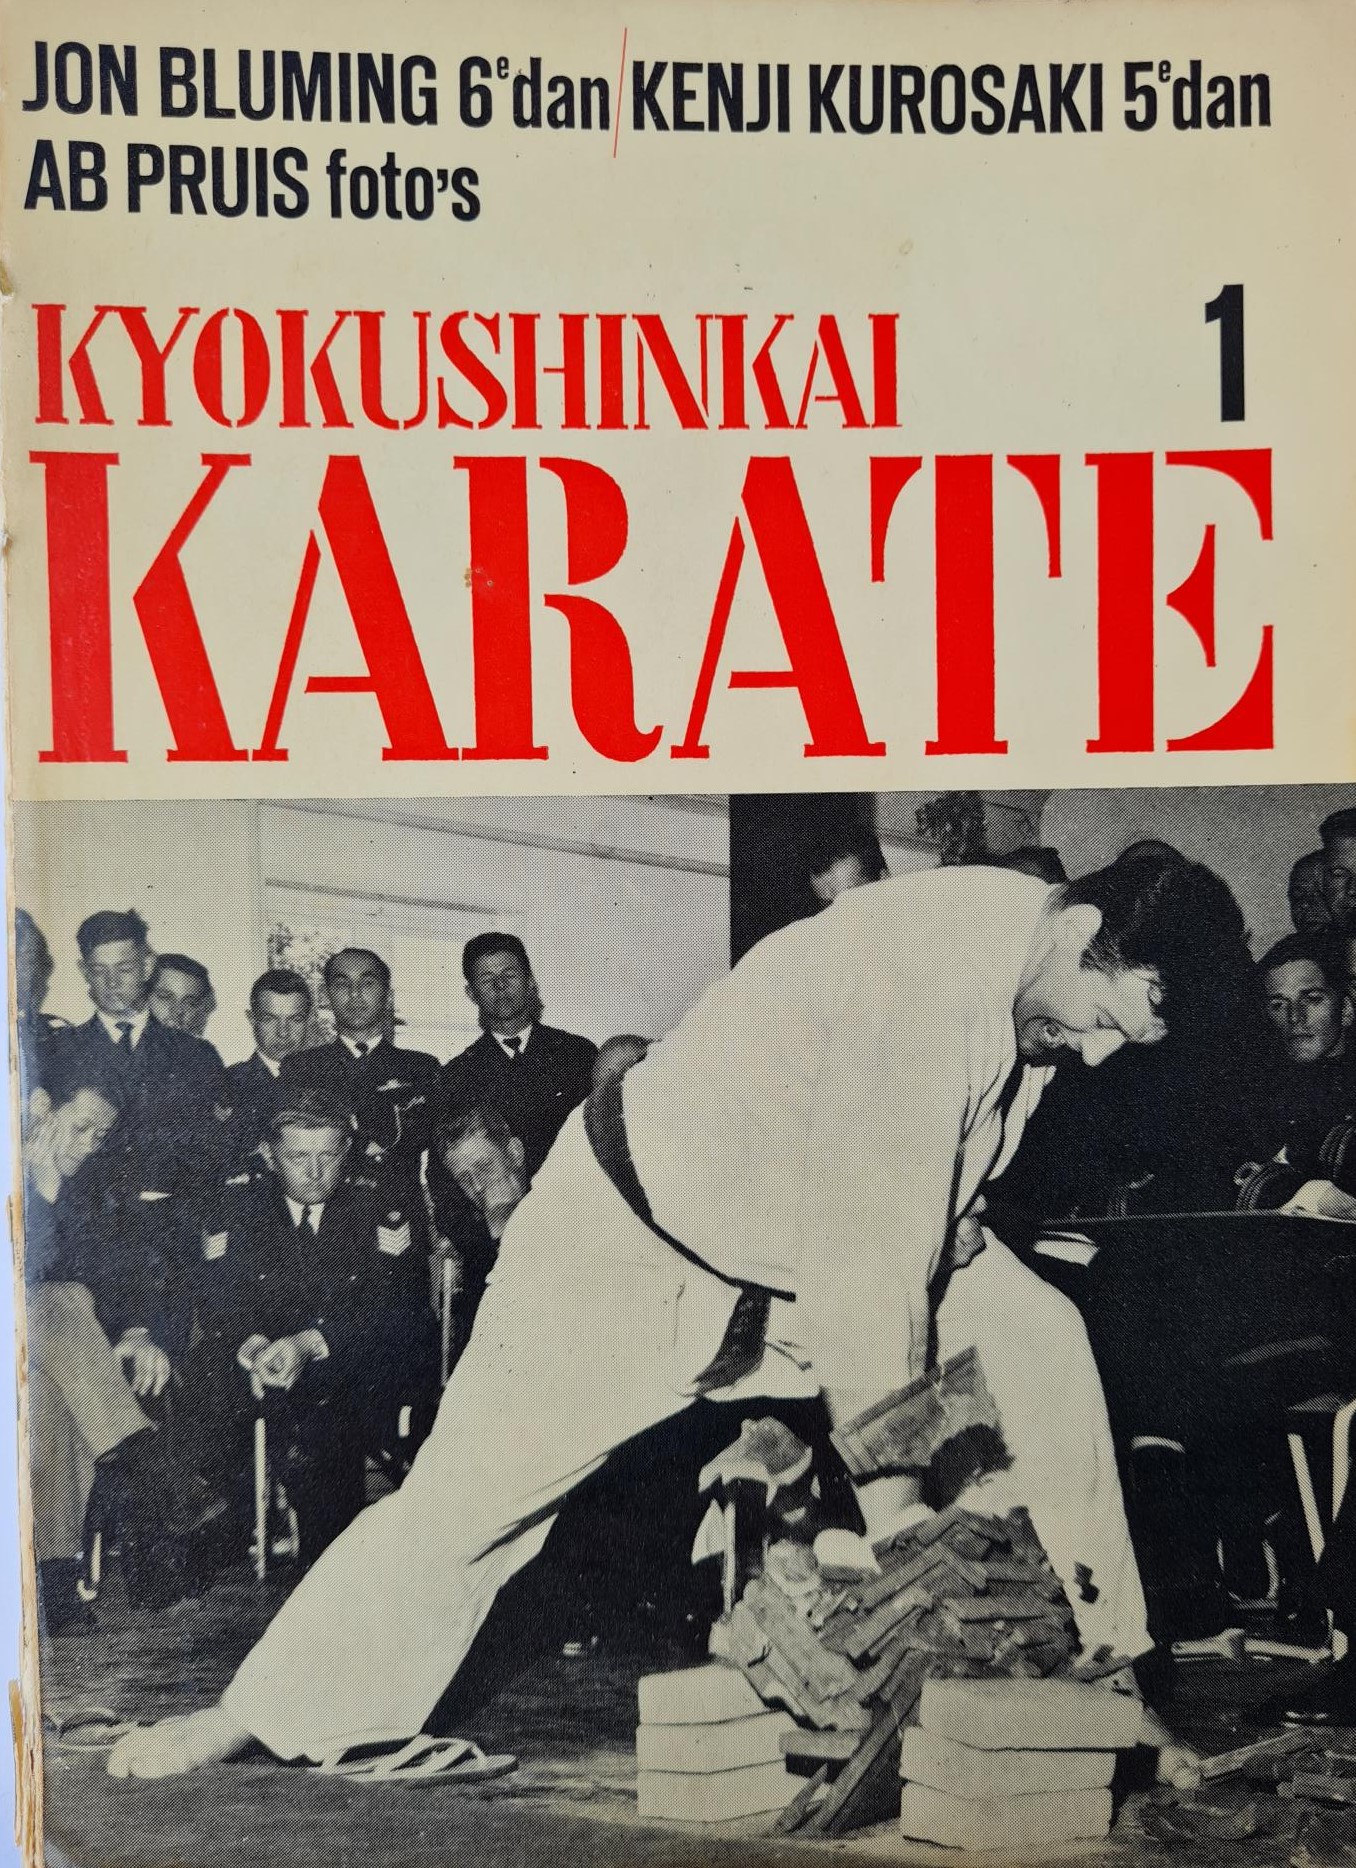 Kyokushinkai Karate 1 - Jon Bluming, Kenji Kurosaki, Ab Pruis